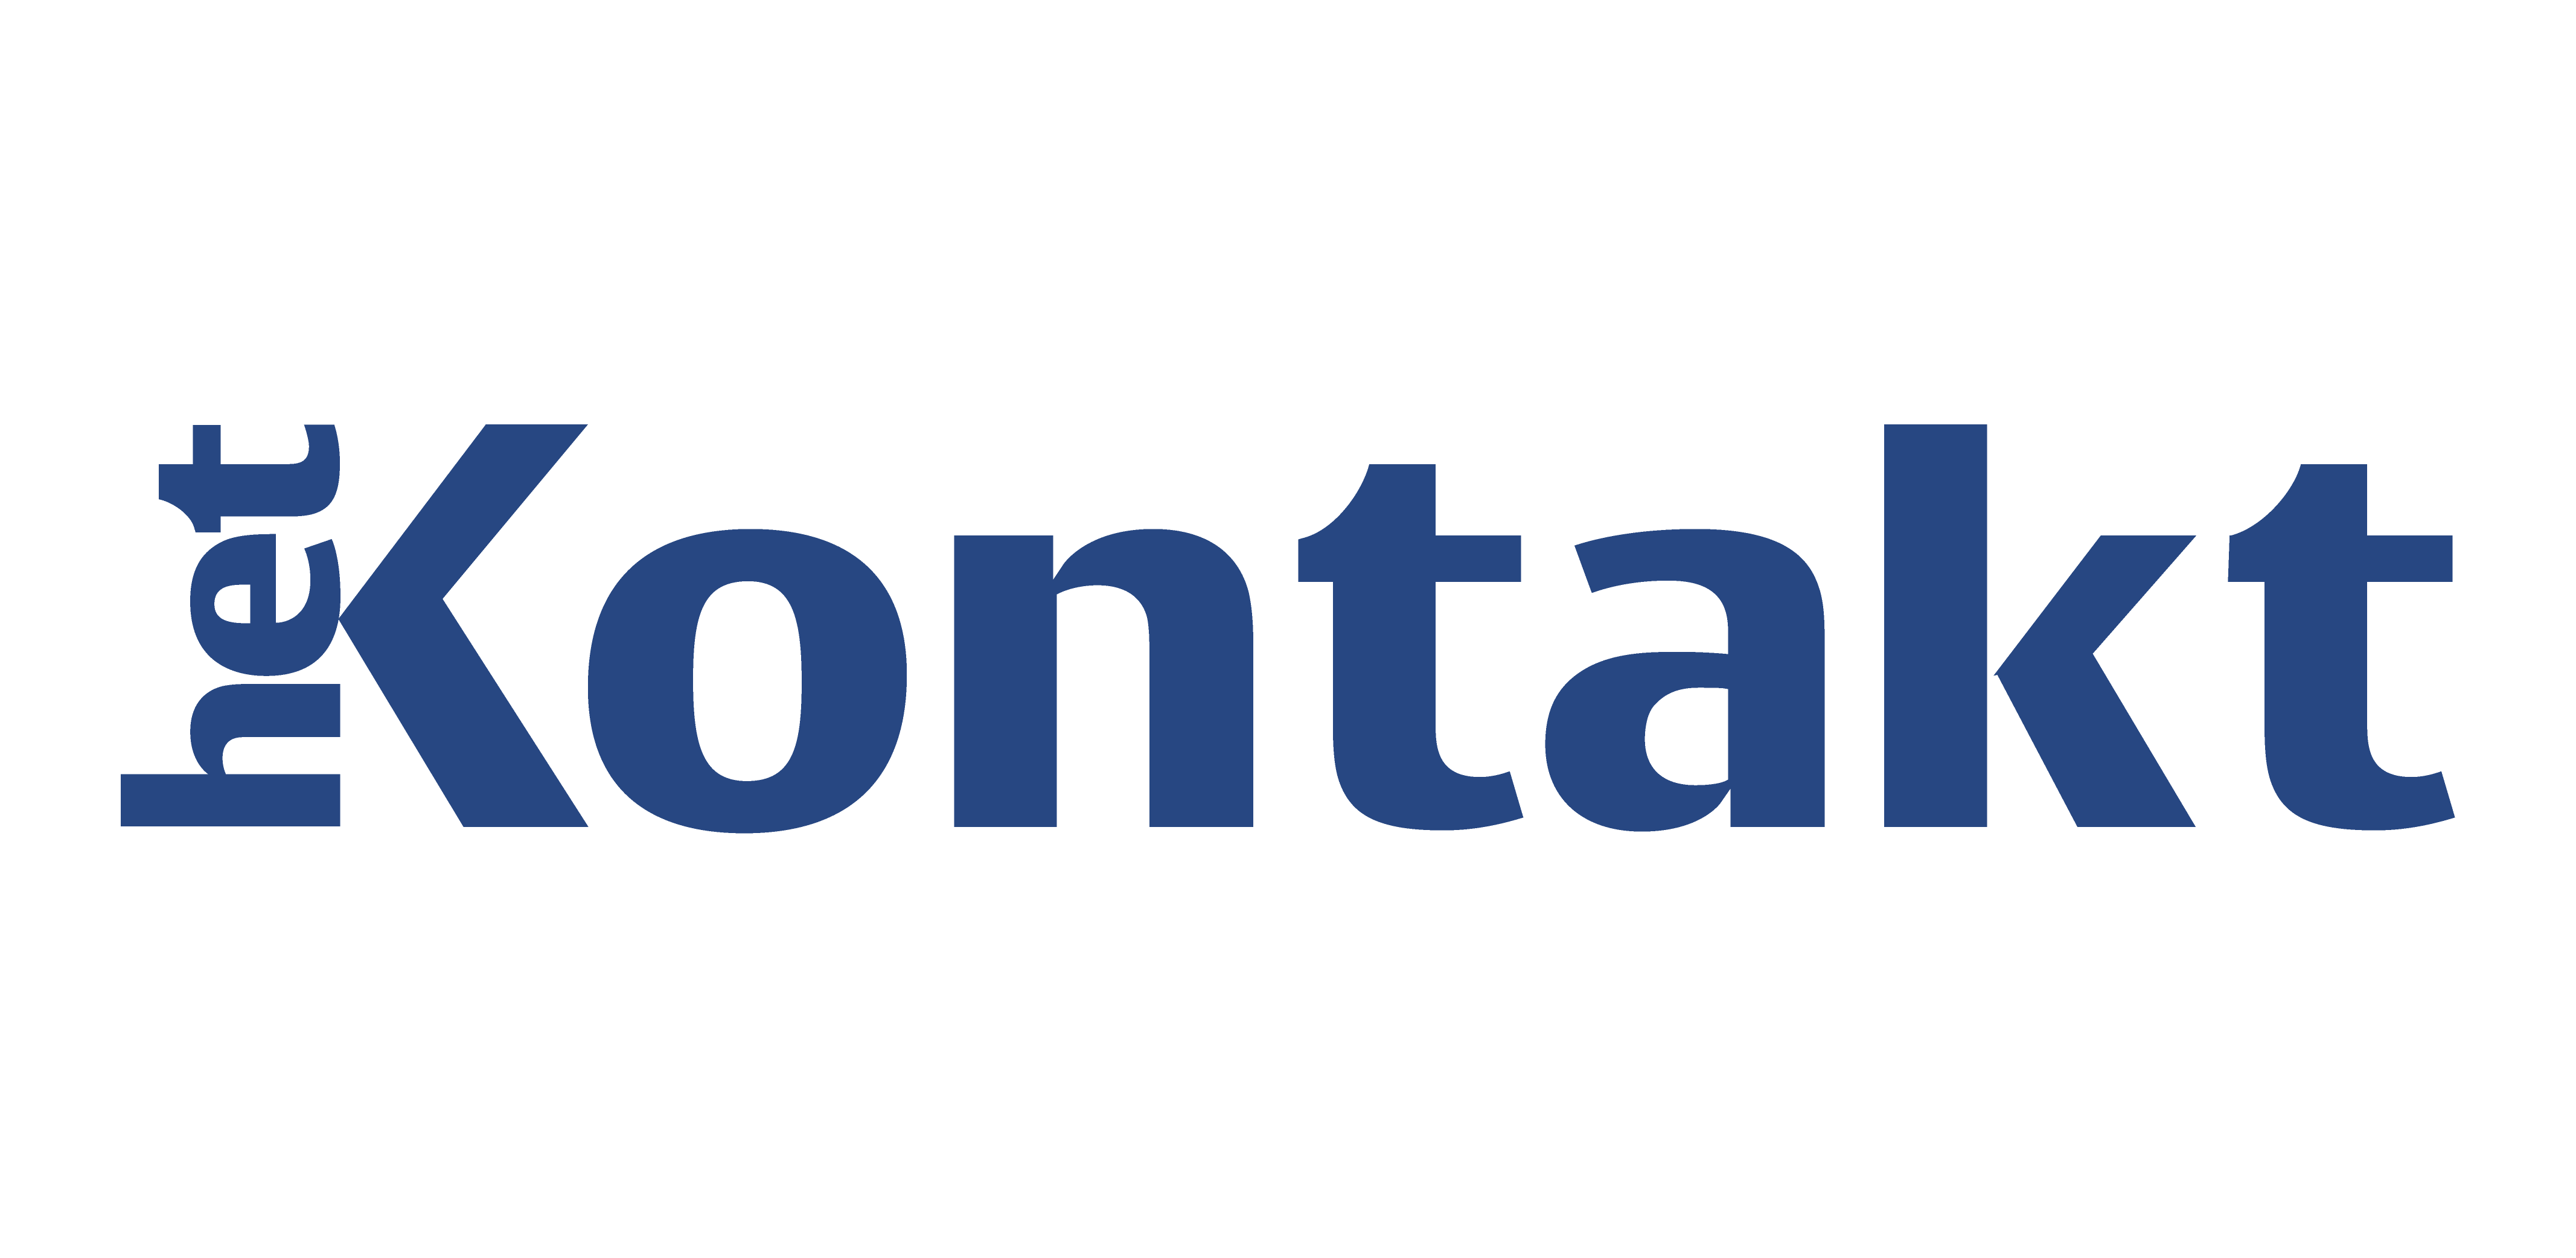 Logo hetkontakt.nl